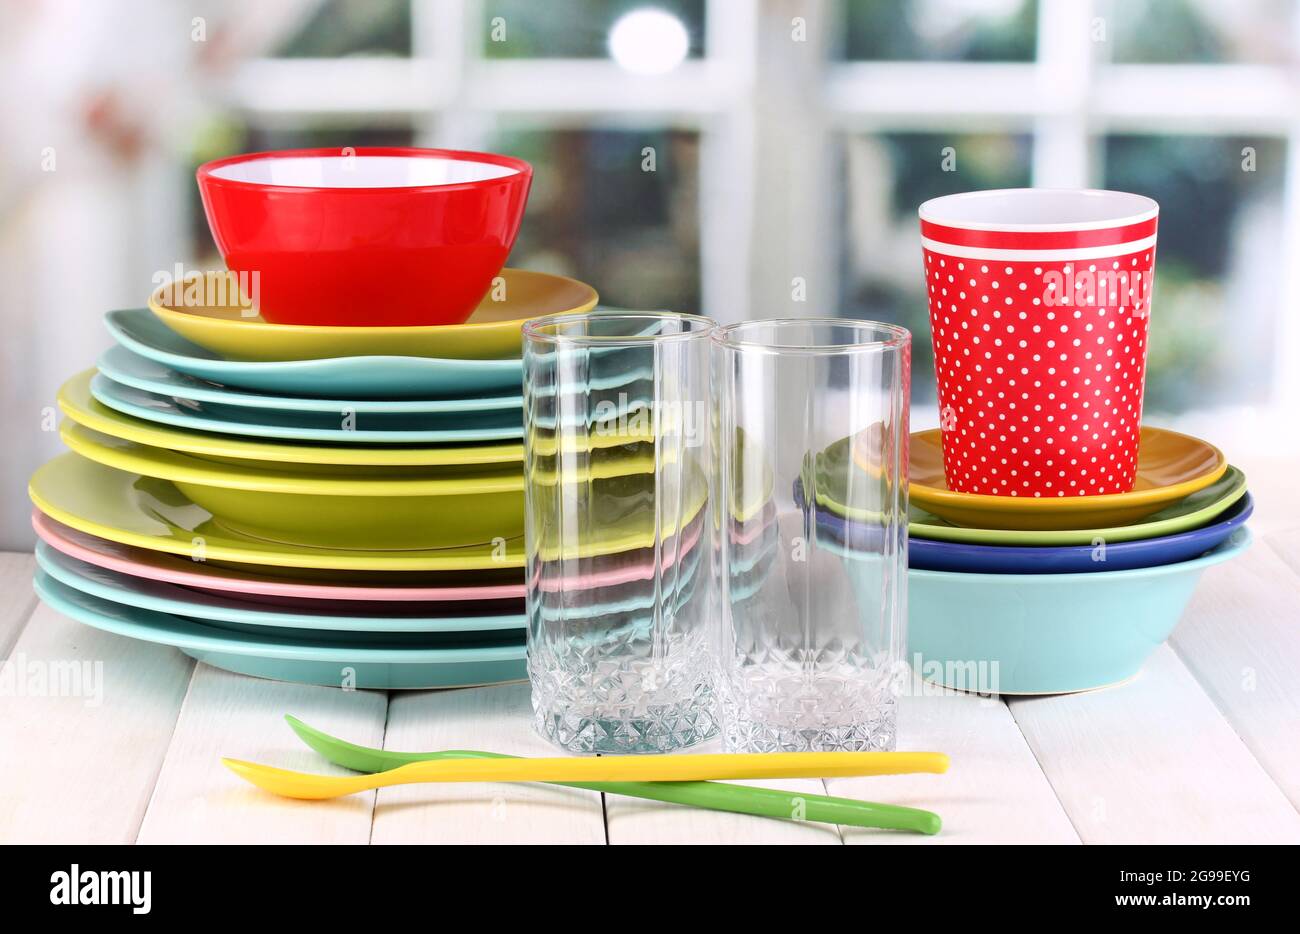 Vaisselle colorée sur table en bois sur fond de fenêtre Photo Stock - Alamy